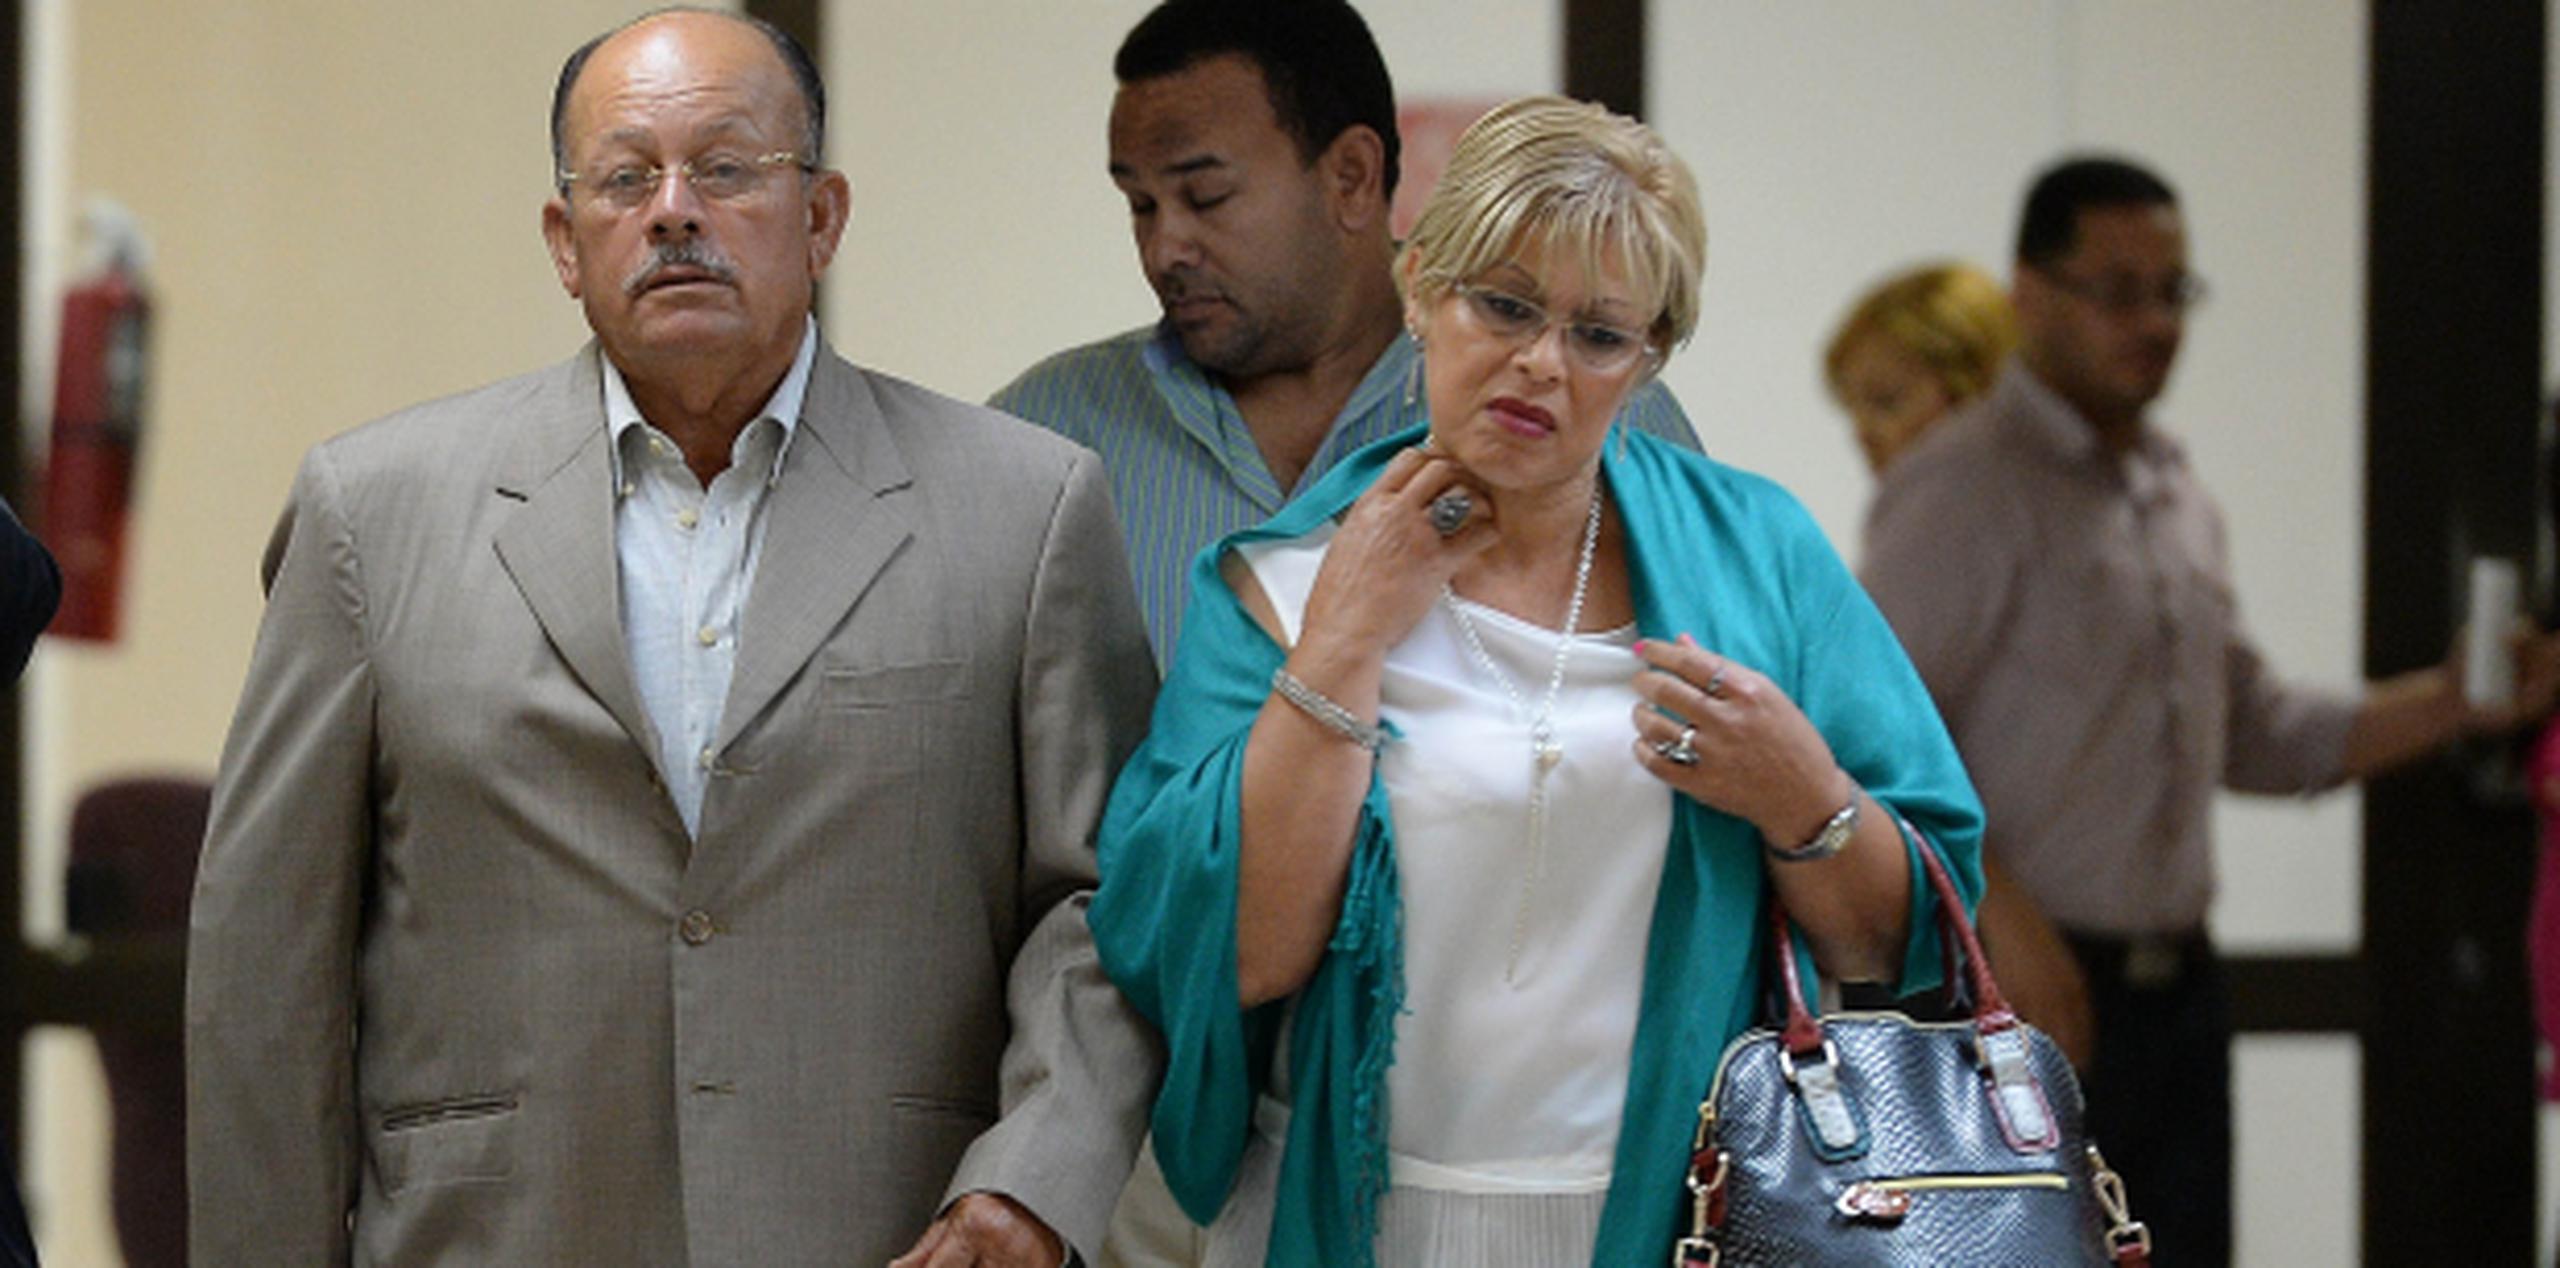 Antonio "Chuchin" Soto Díaz y su esposa Agnes Lopés Santiago están acusados de múltiples cargos en el tribunal de San Juan. (Archivo)